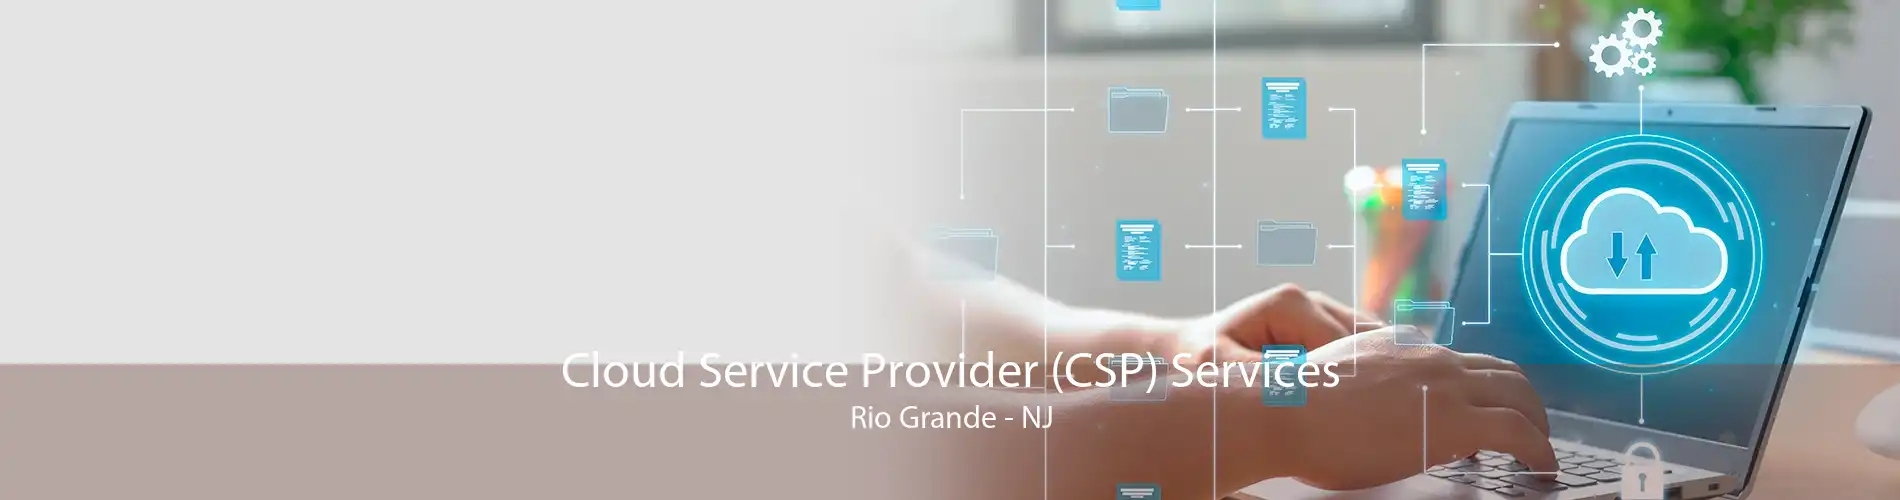 Cloud Service Provider (CSP) Services Rio Grande - NJ